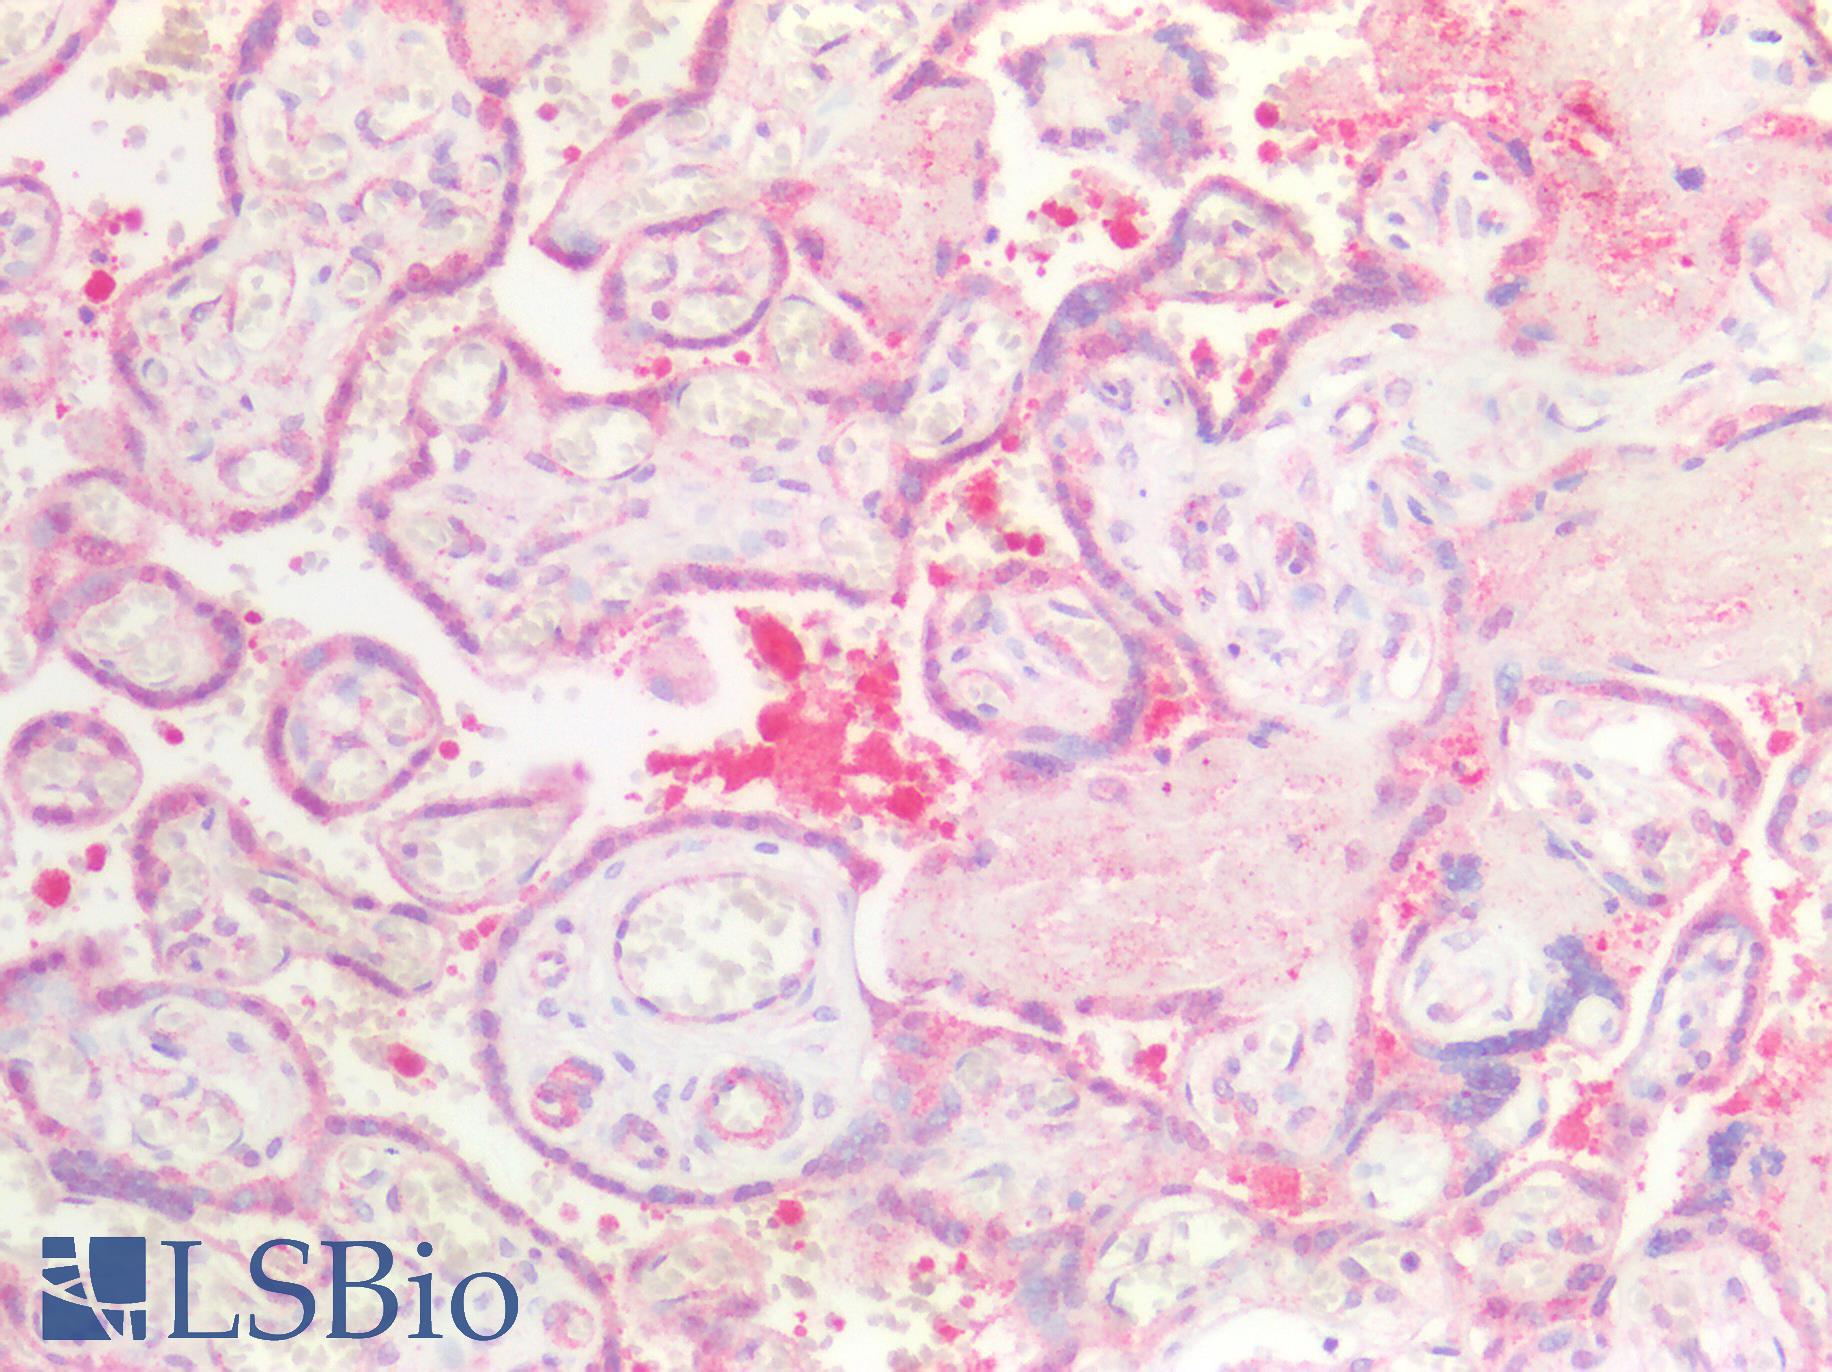 MAP2K7 / MEK7 Antibody - Human Placenta: Formalin-Fixed, Paraffin-Embedded (FFPE)